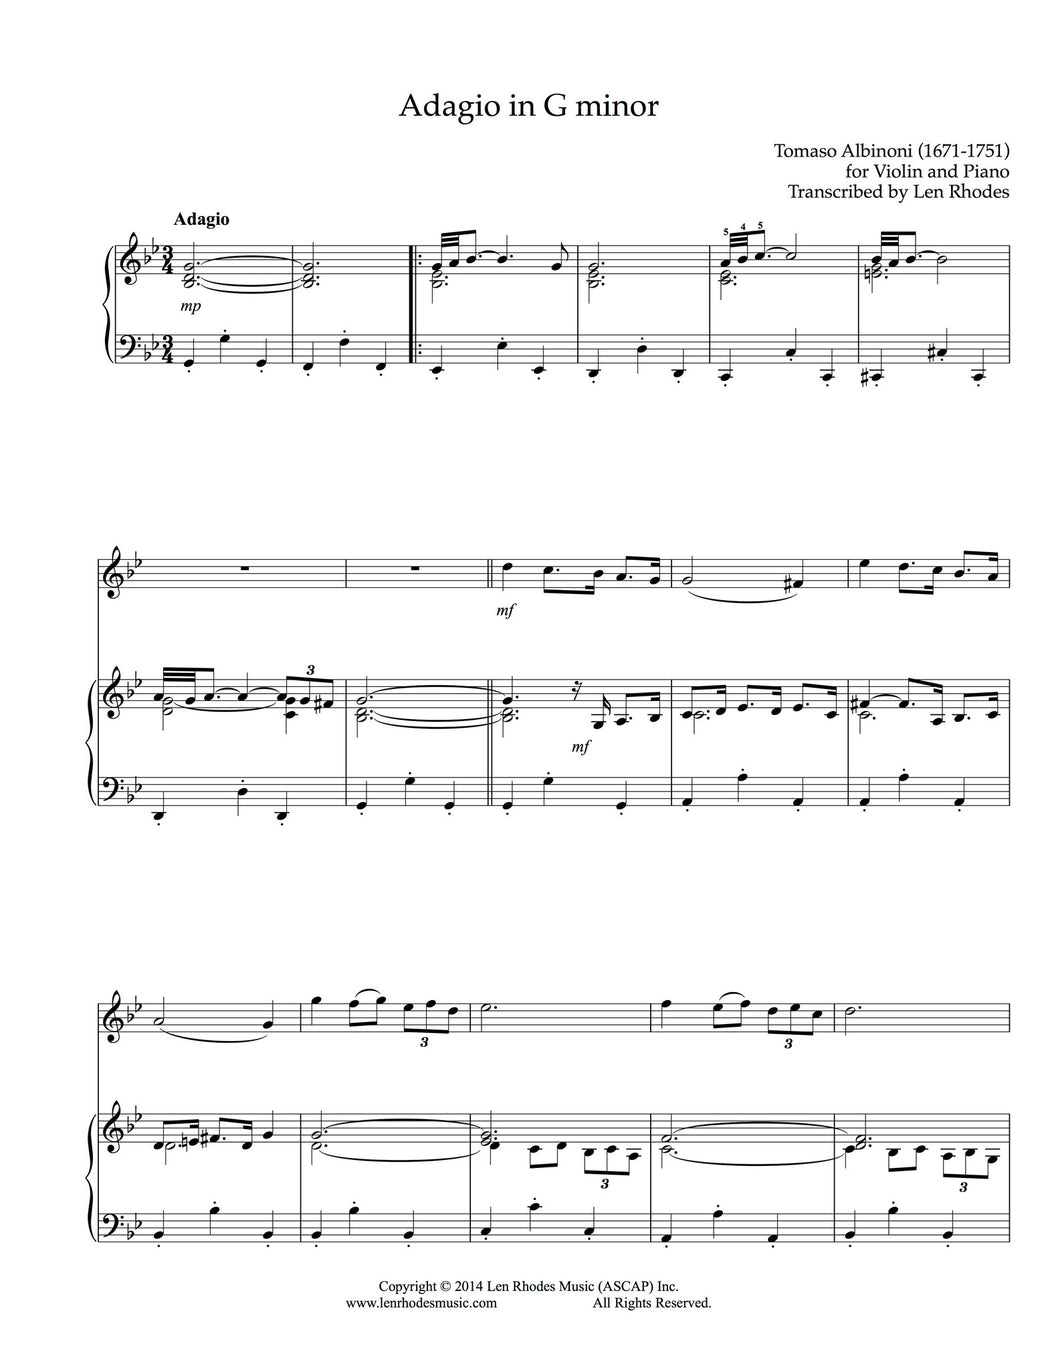 Adagio in G minor, Albinoni - Violin and Piano